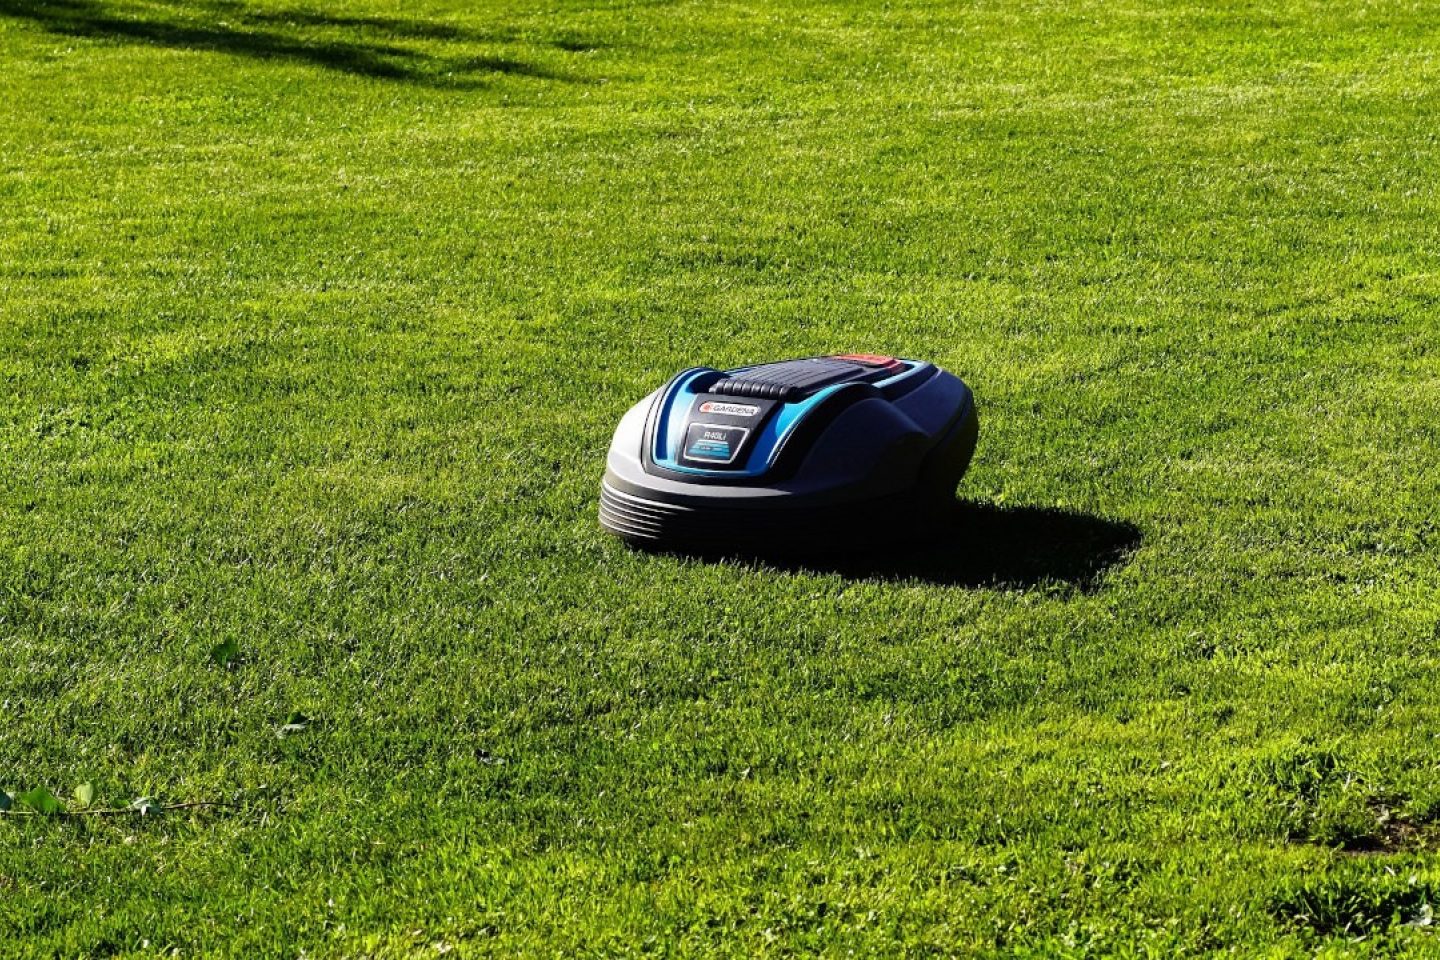 A robot lawn mower going across a green lawn